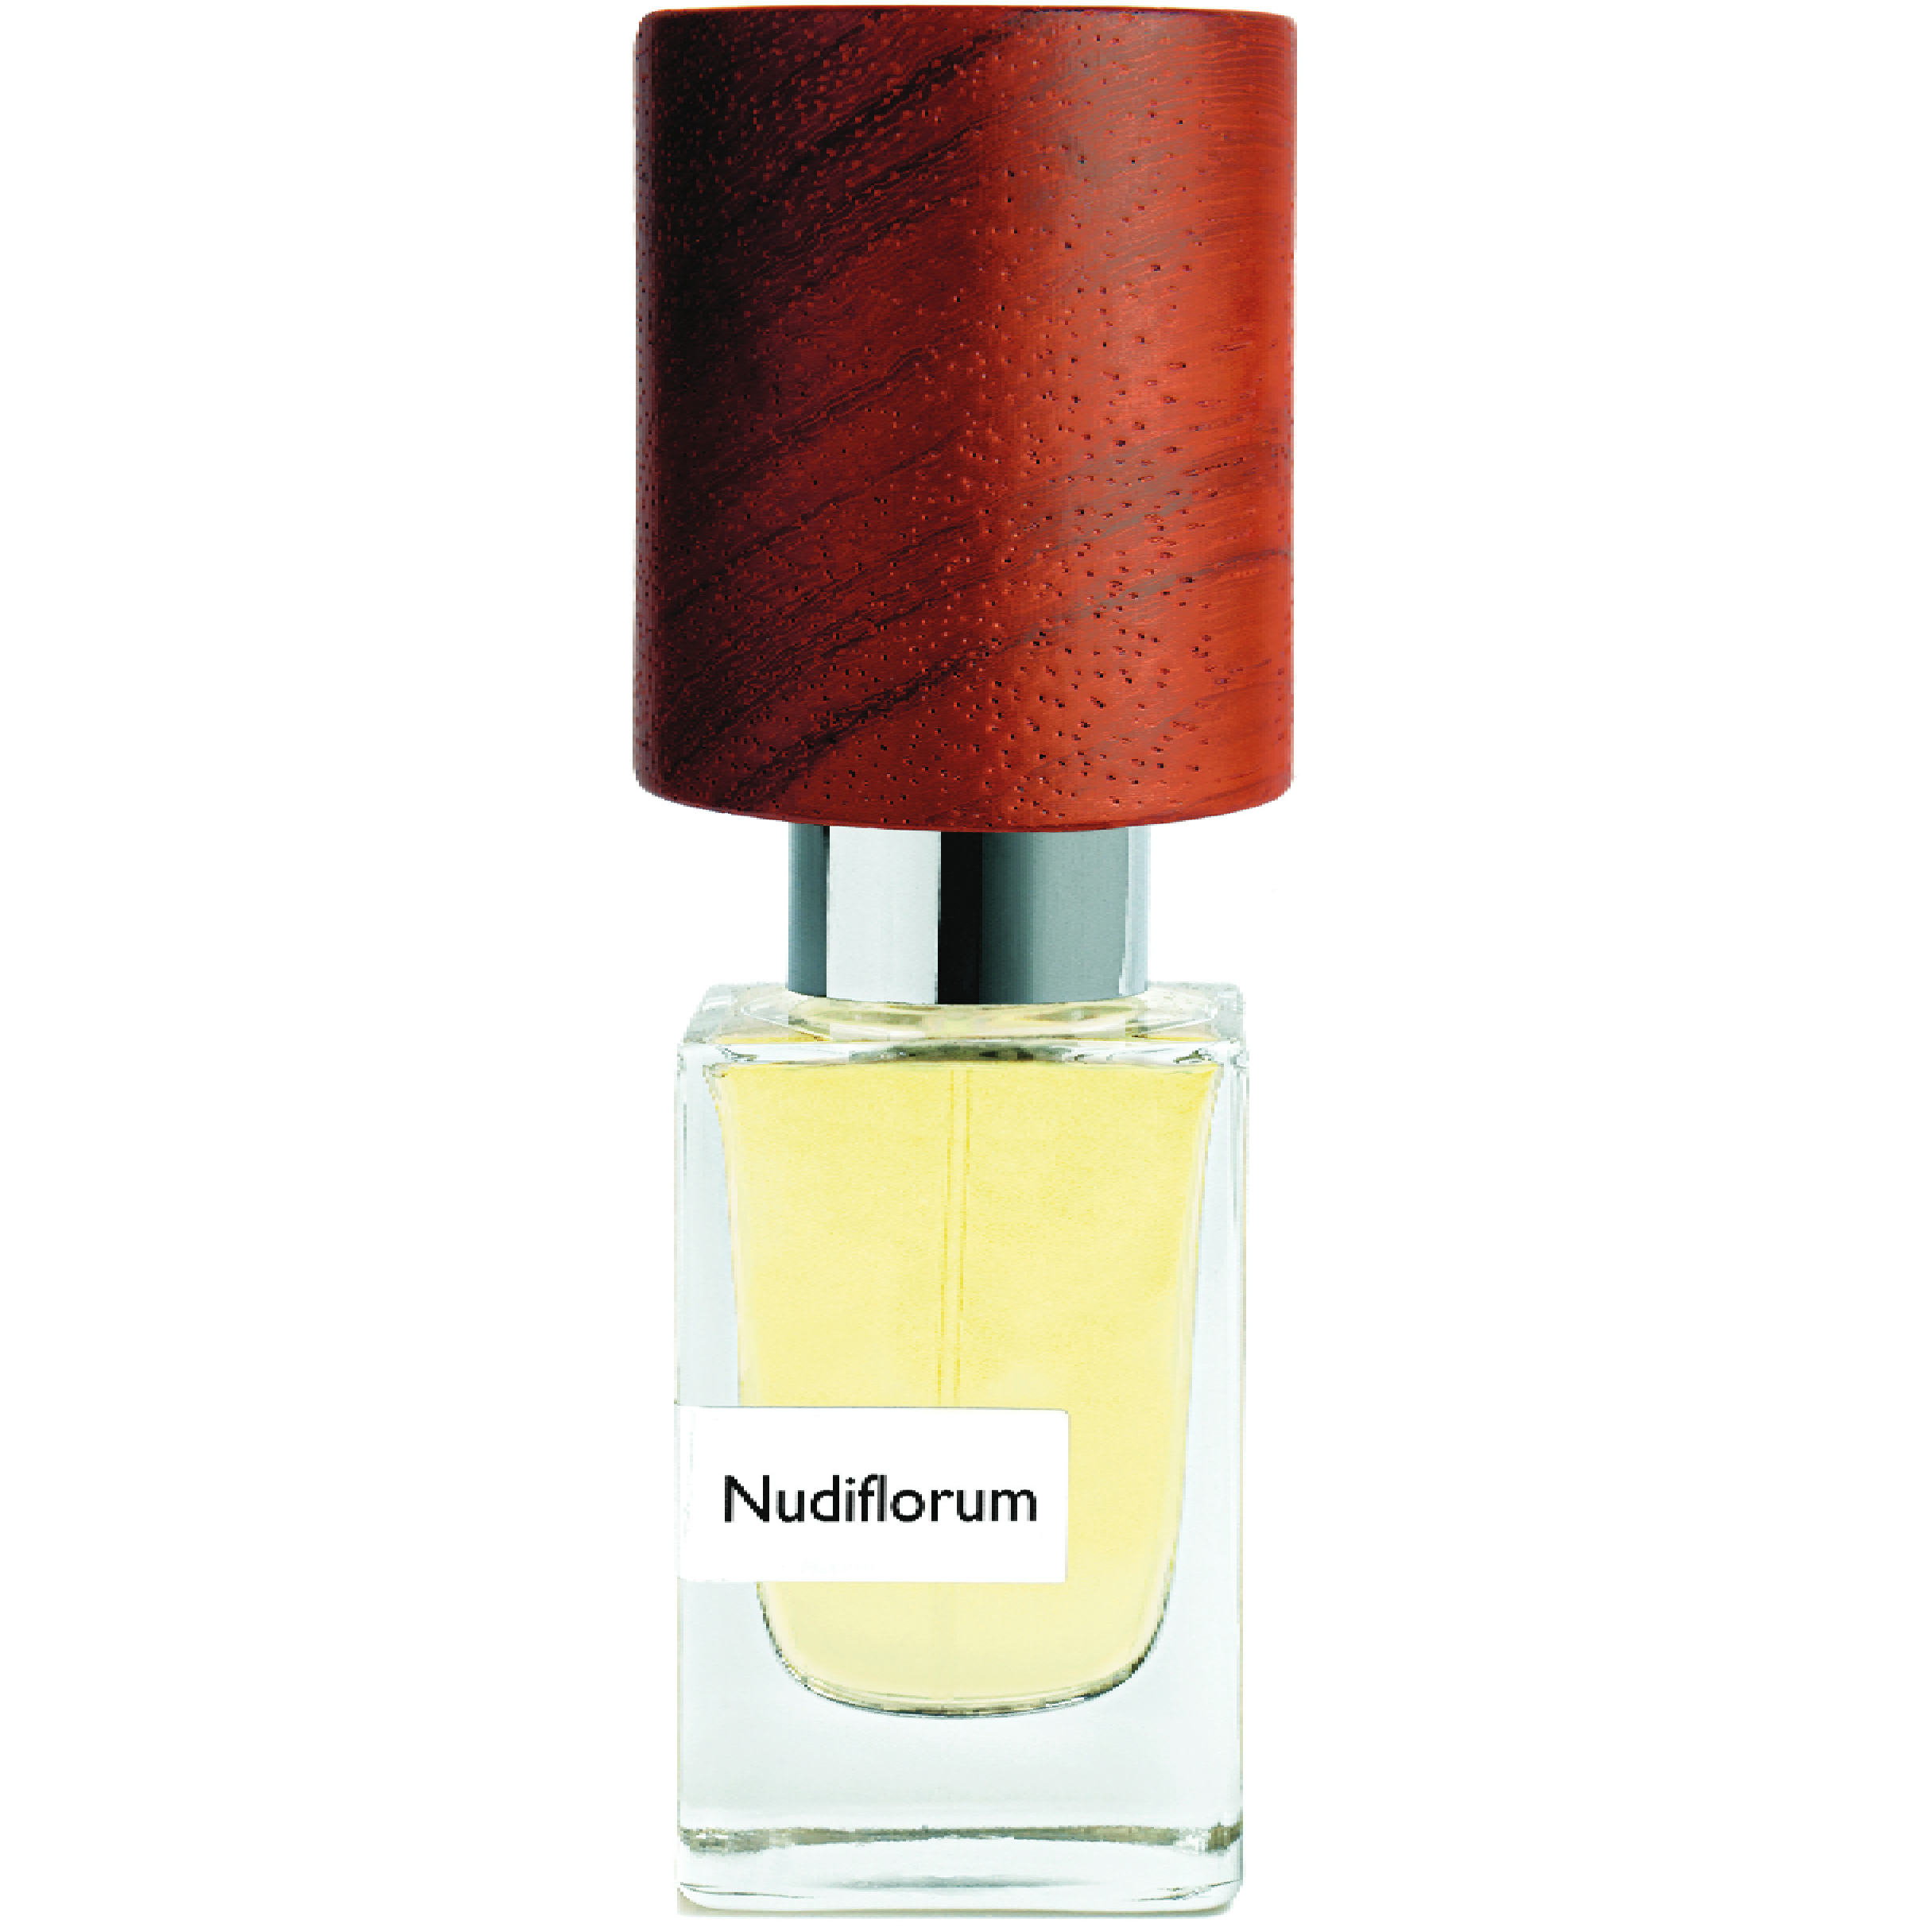 Sample of Nudiflorum